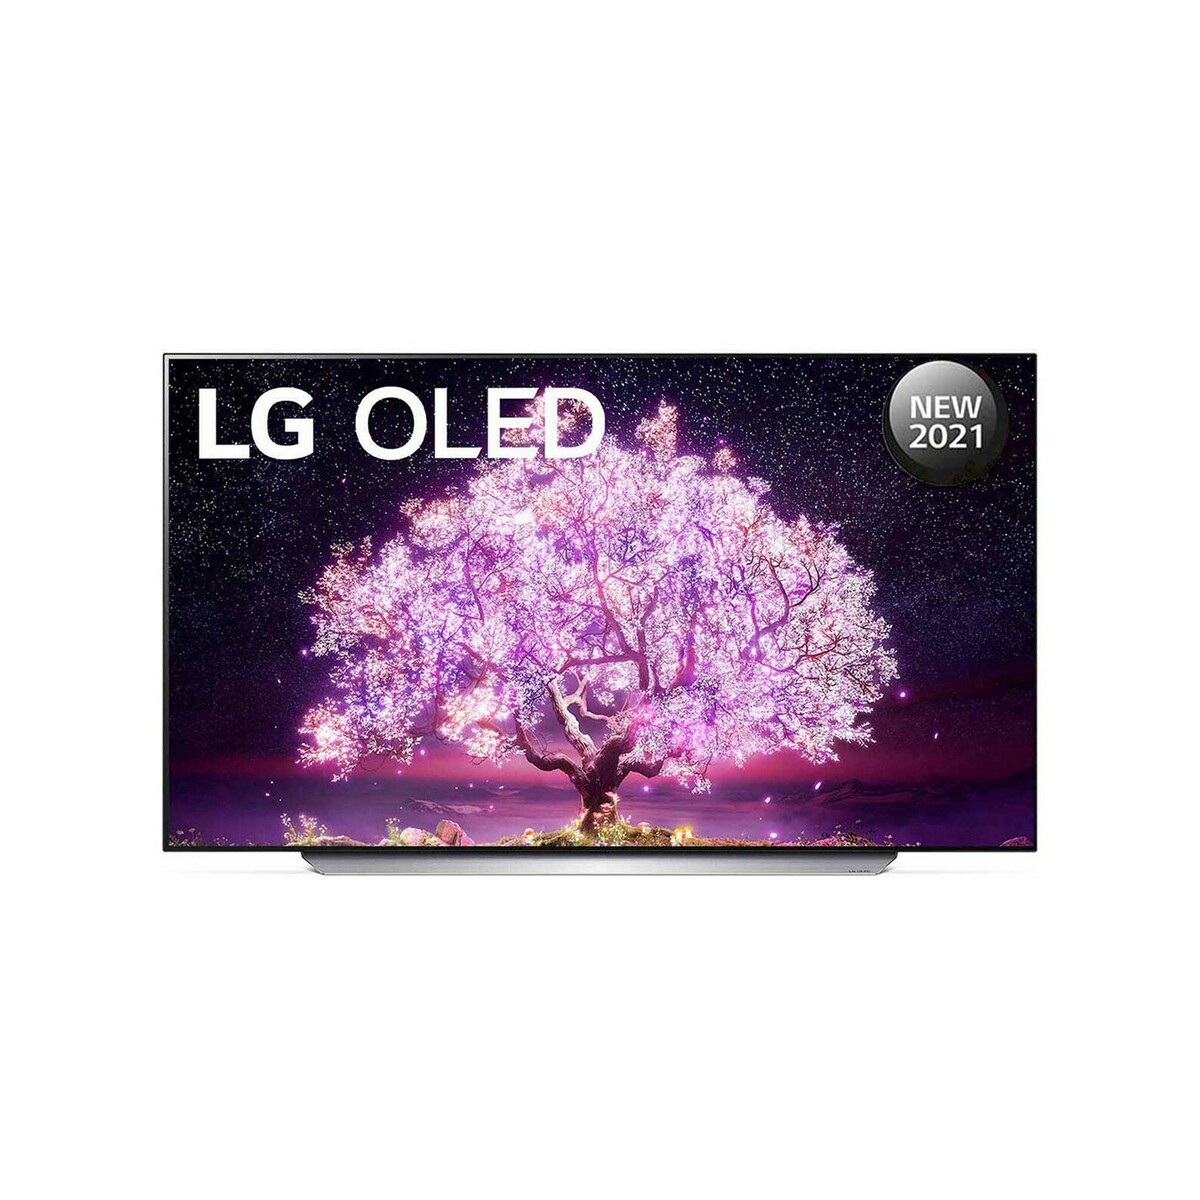 LG OLED TV OLED65C1PTZ 65"